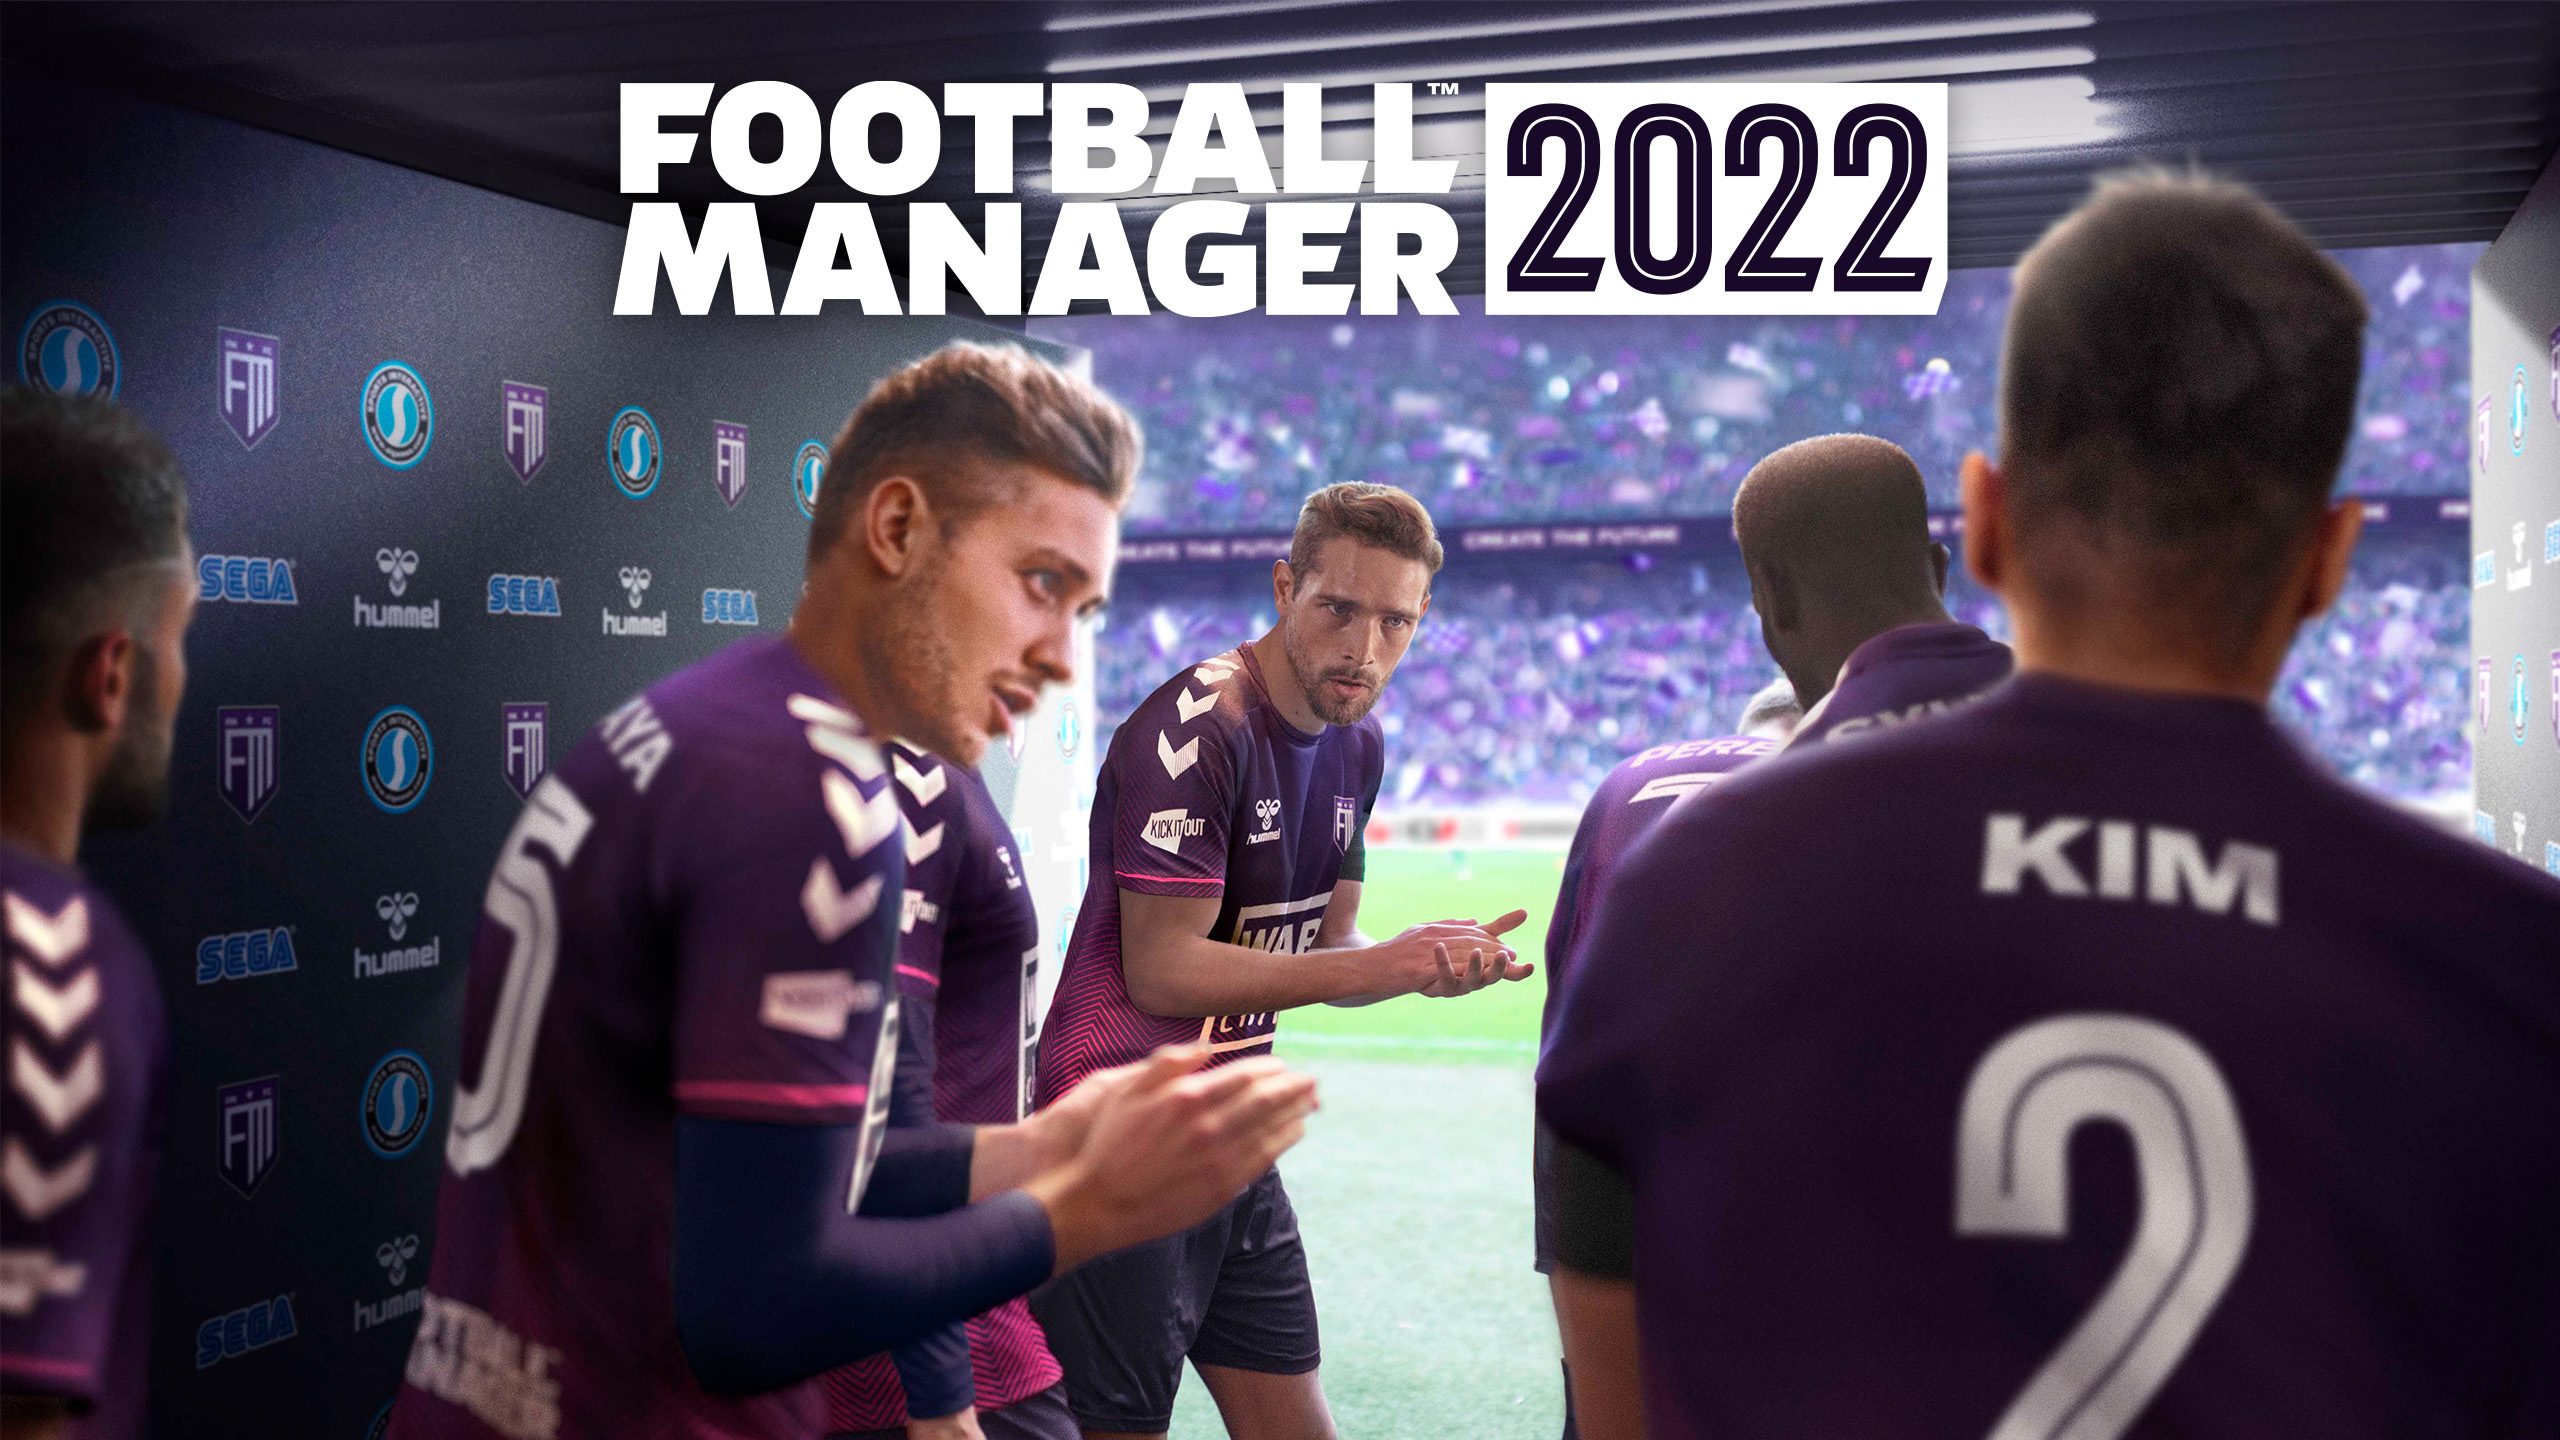 football manager 2022 annuncia un nuovo motore di gioco.